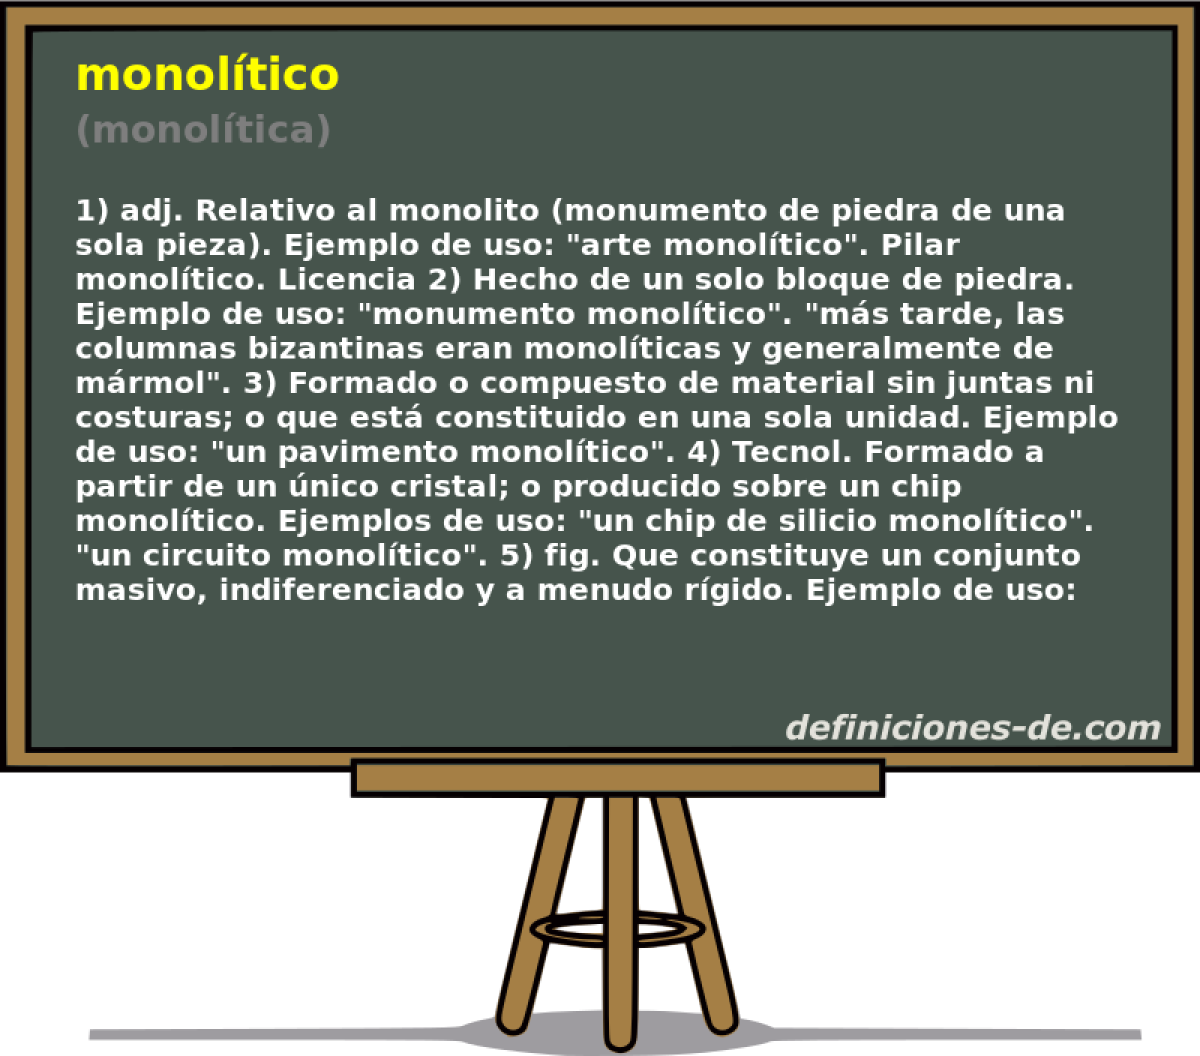 monoltico (monoltica)